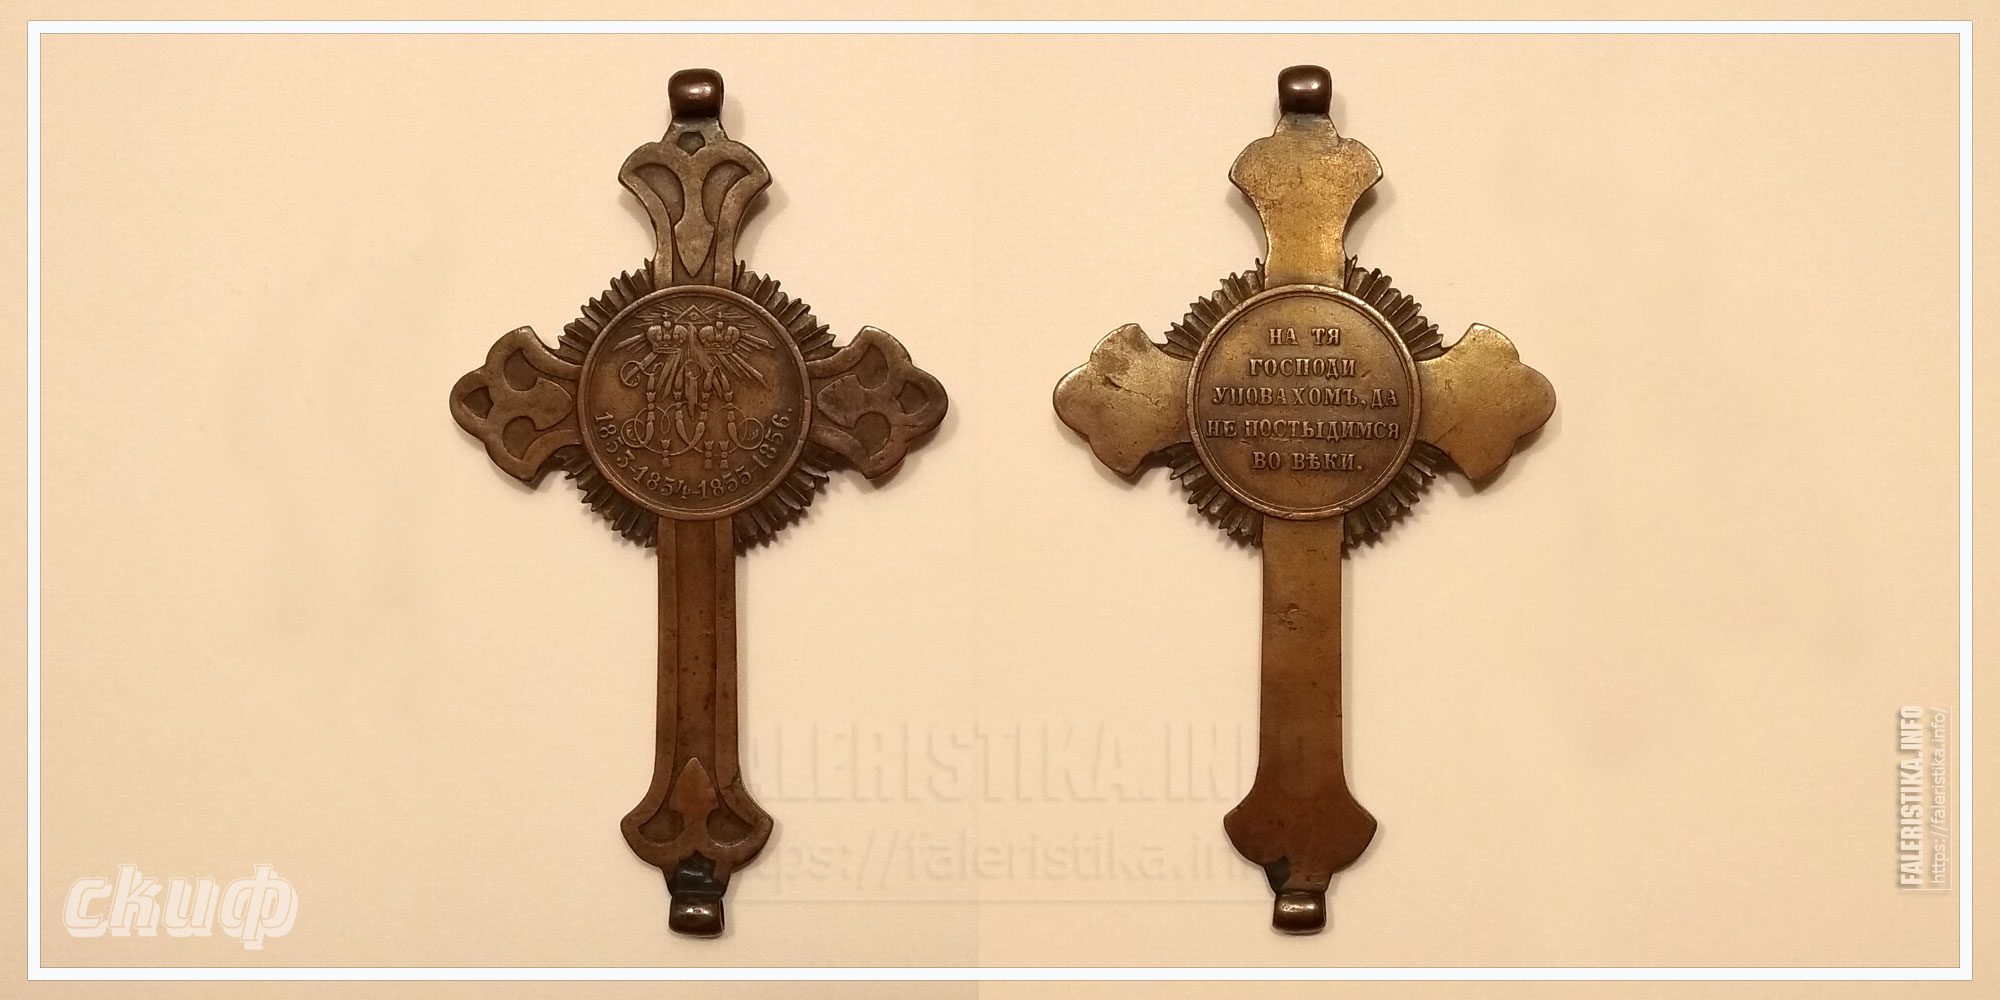 Наперсный крест для священнослужителей за Крымскую войну 1853-1856 годов